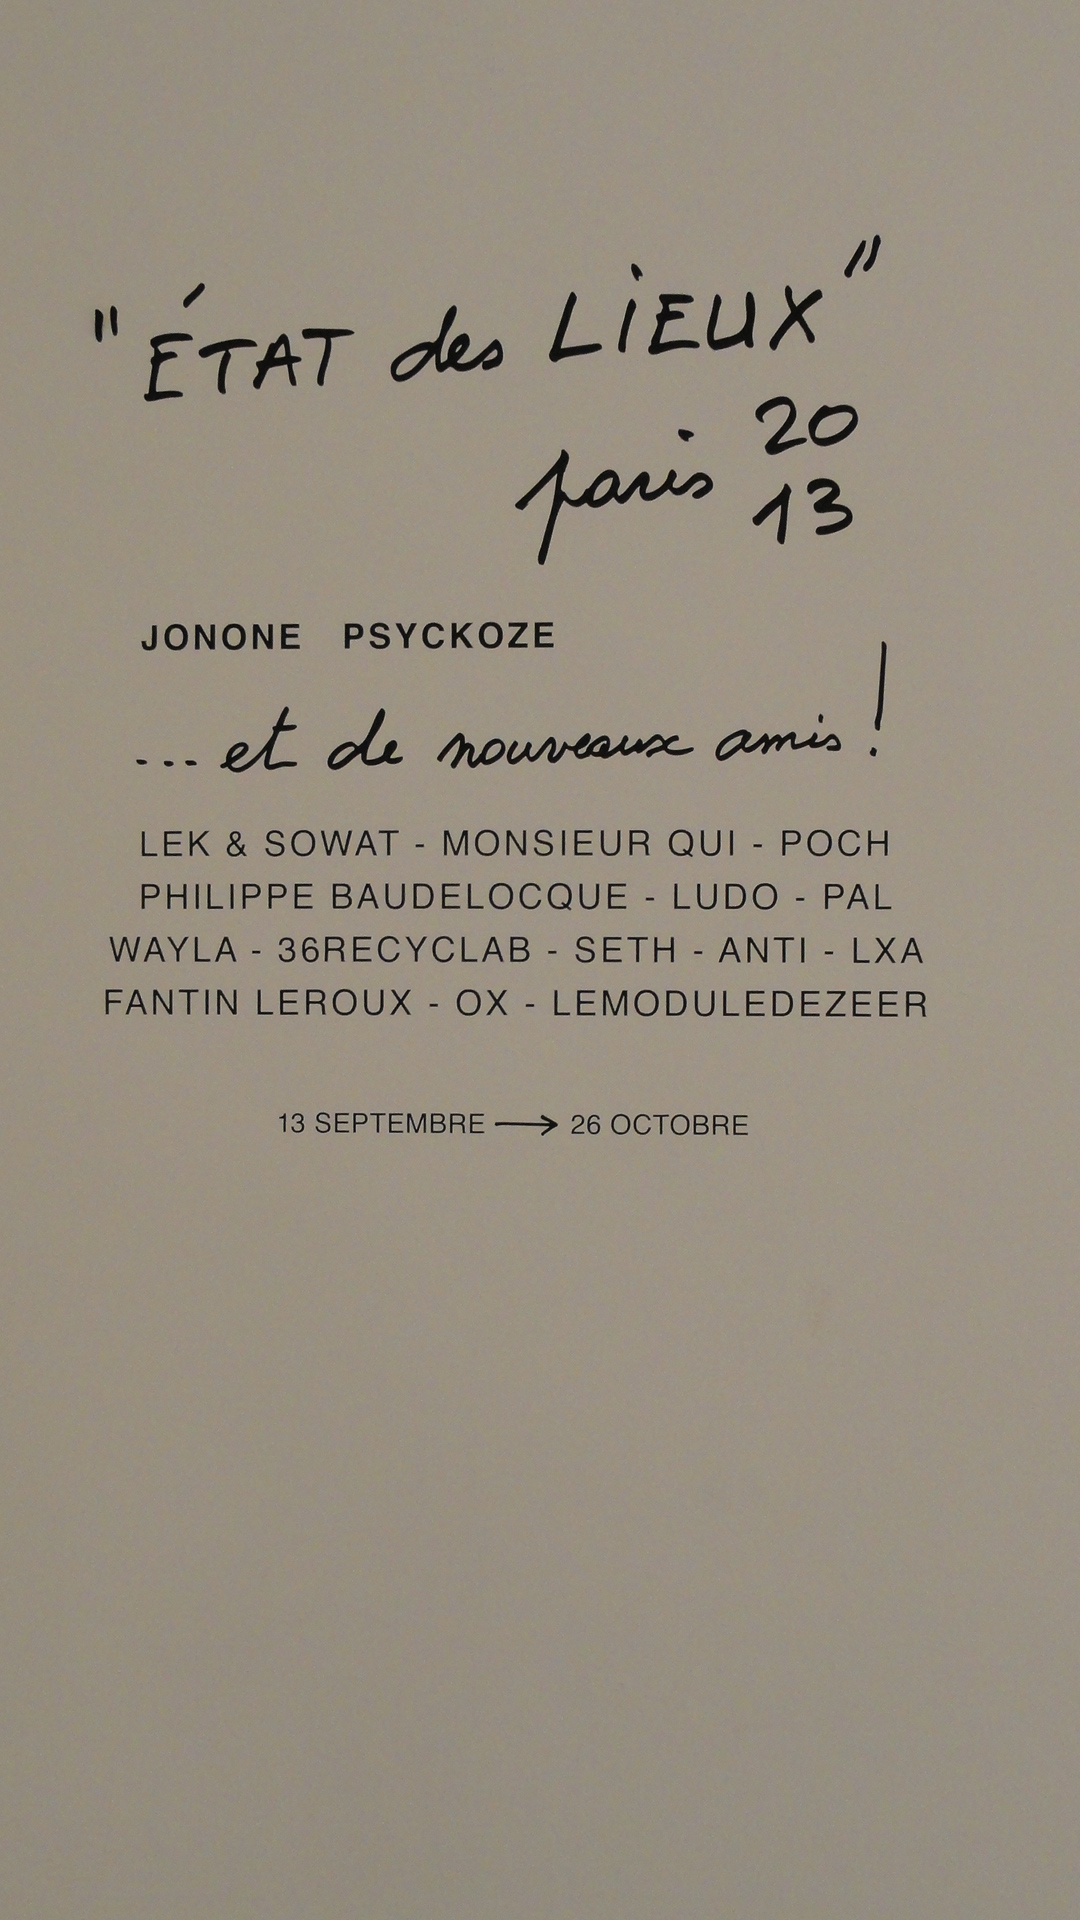 Etat des Lieux 2013 - Galerie du jour, Agnès b. - Artistes invités